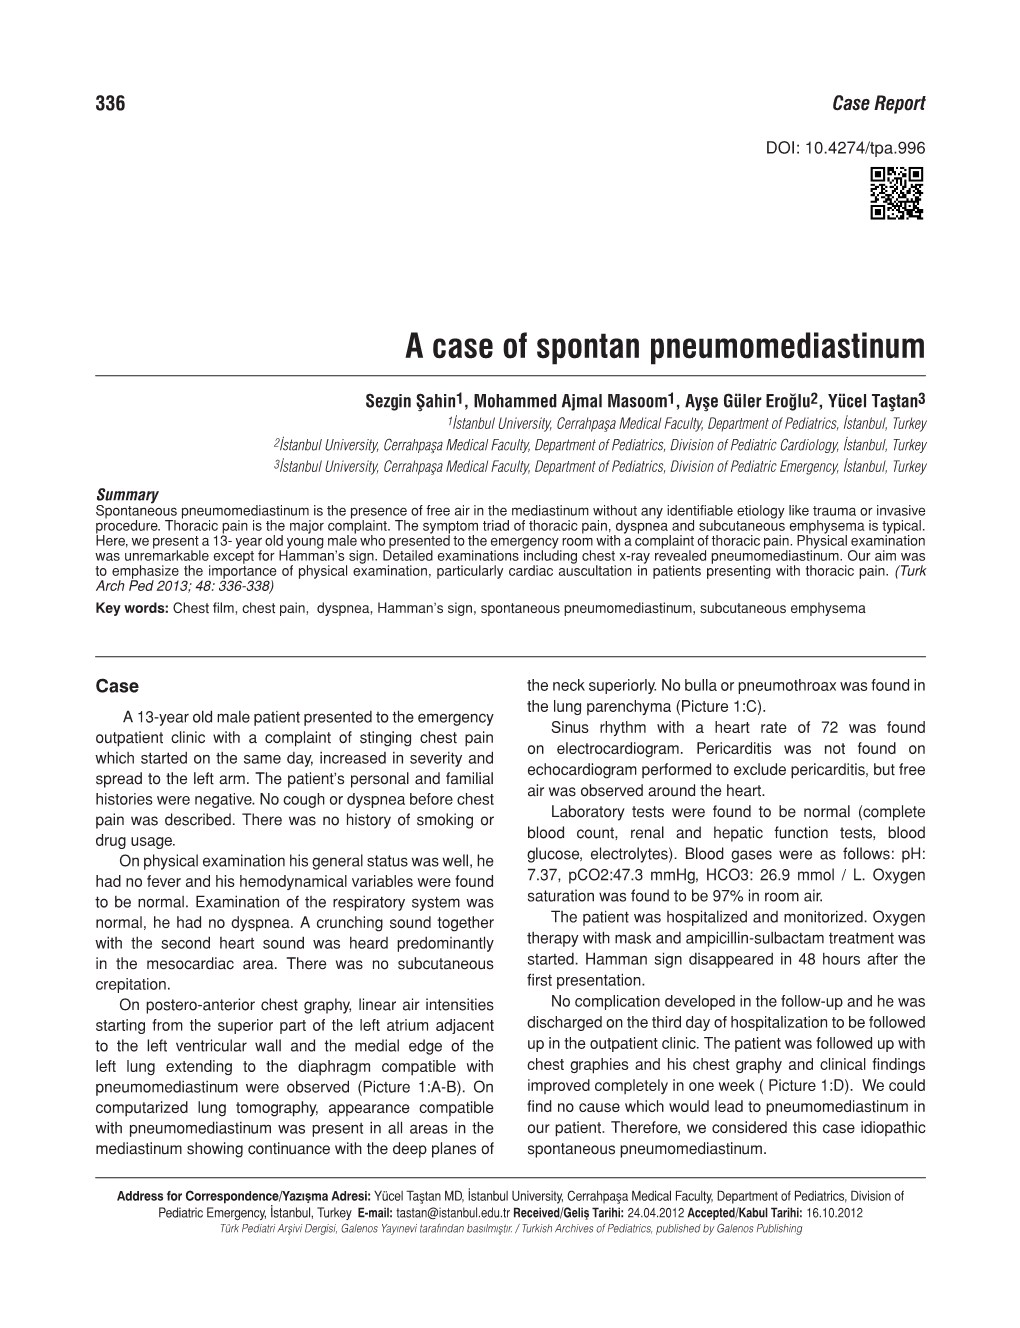 A Case of Spontan Pneumomediastinum